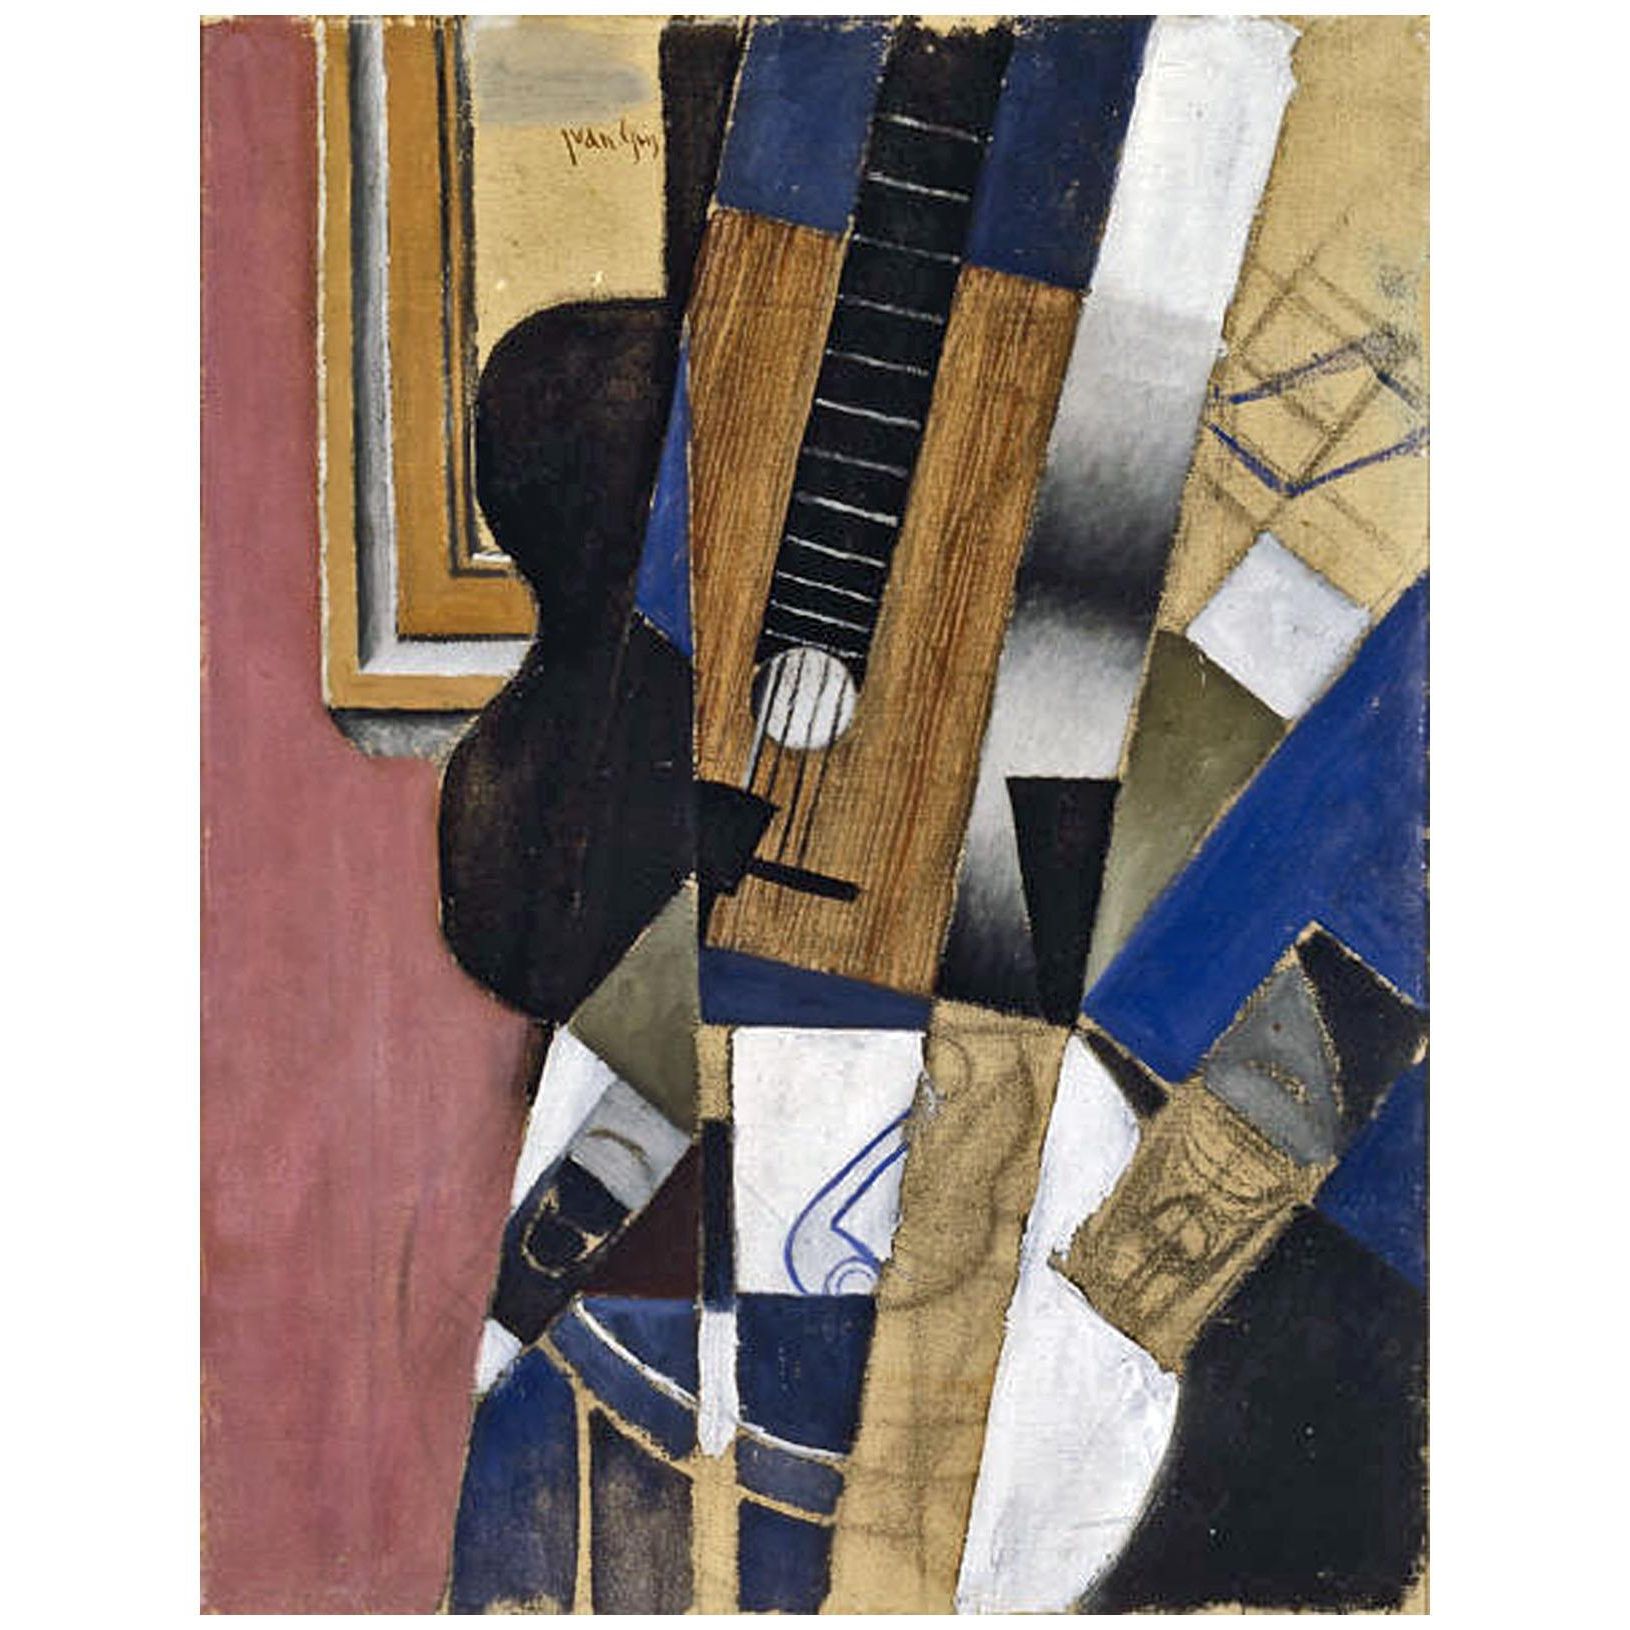 Juan Gris. Guitare et Pipe. 1913. Dallas Museum of Art